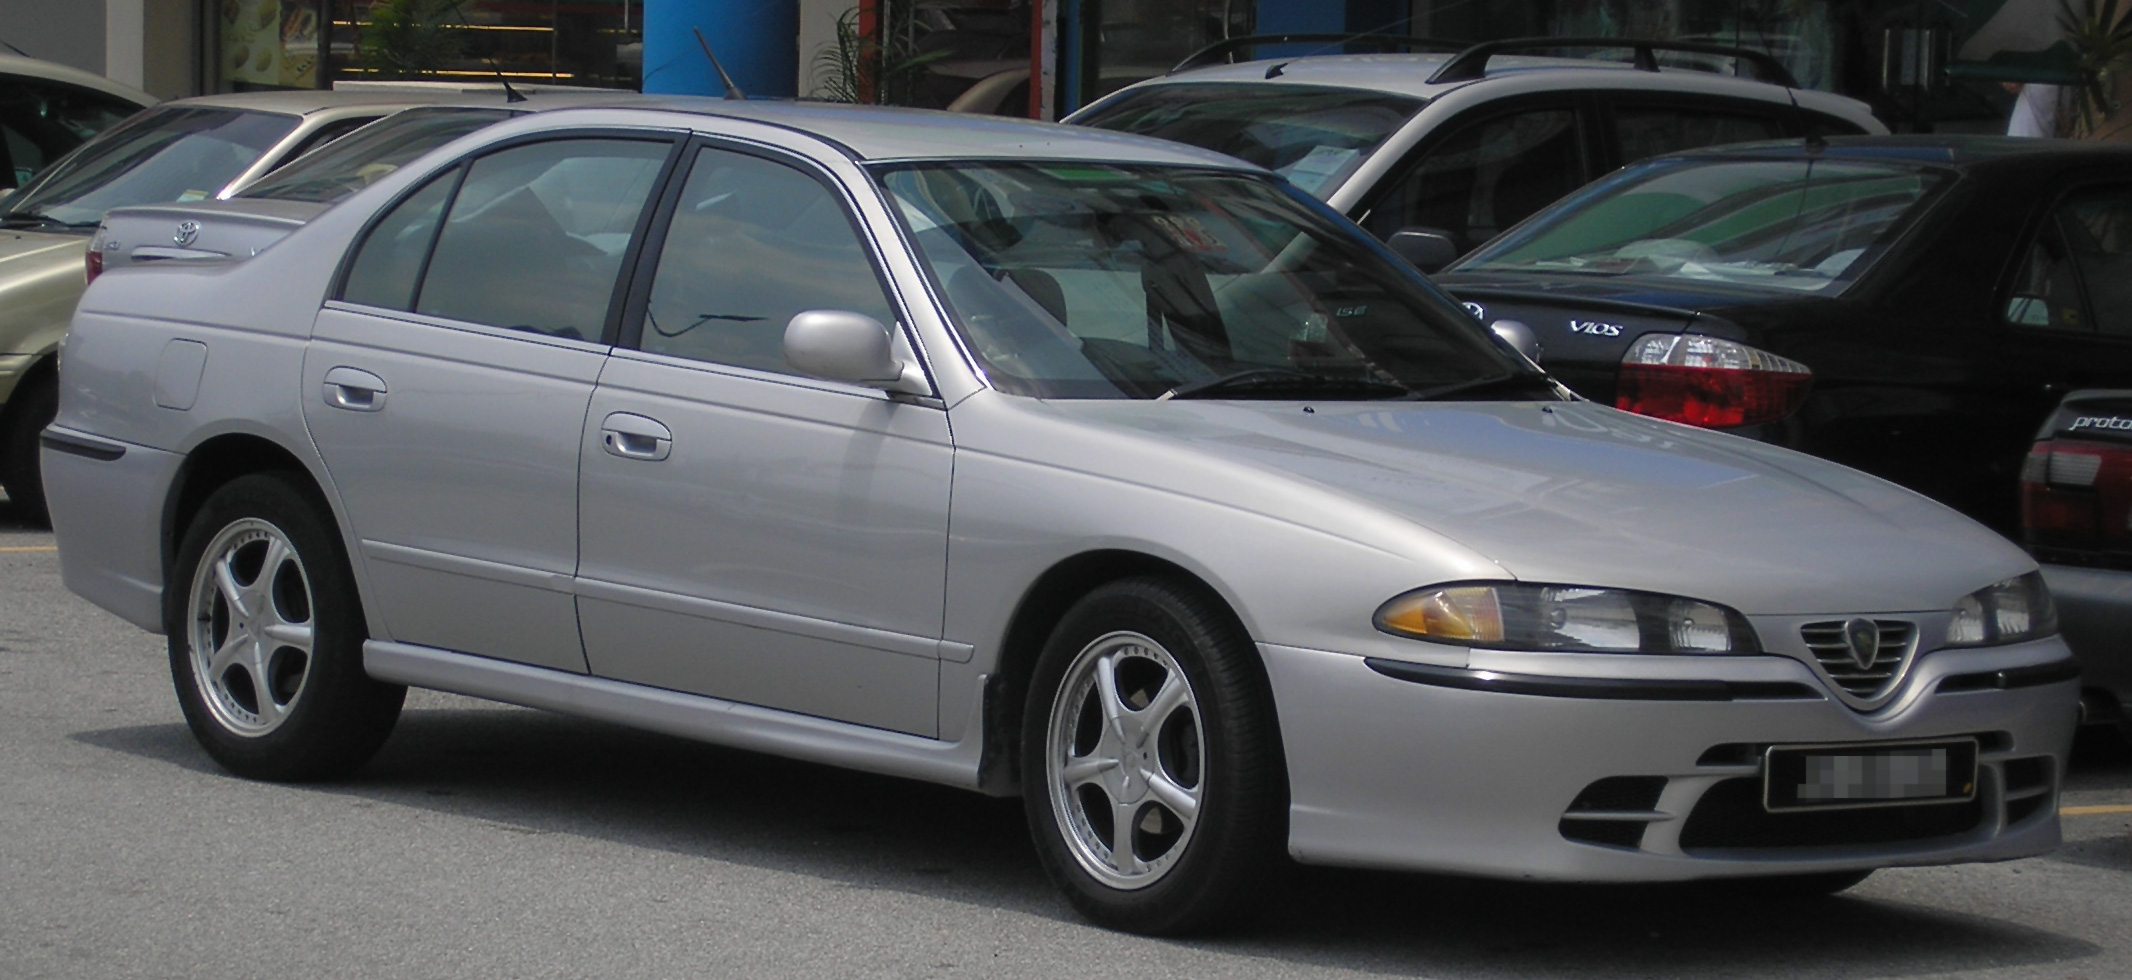 Proton Perdana V6